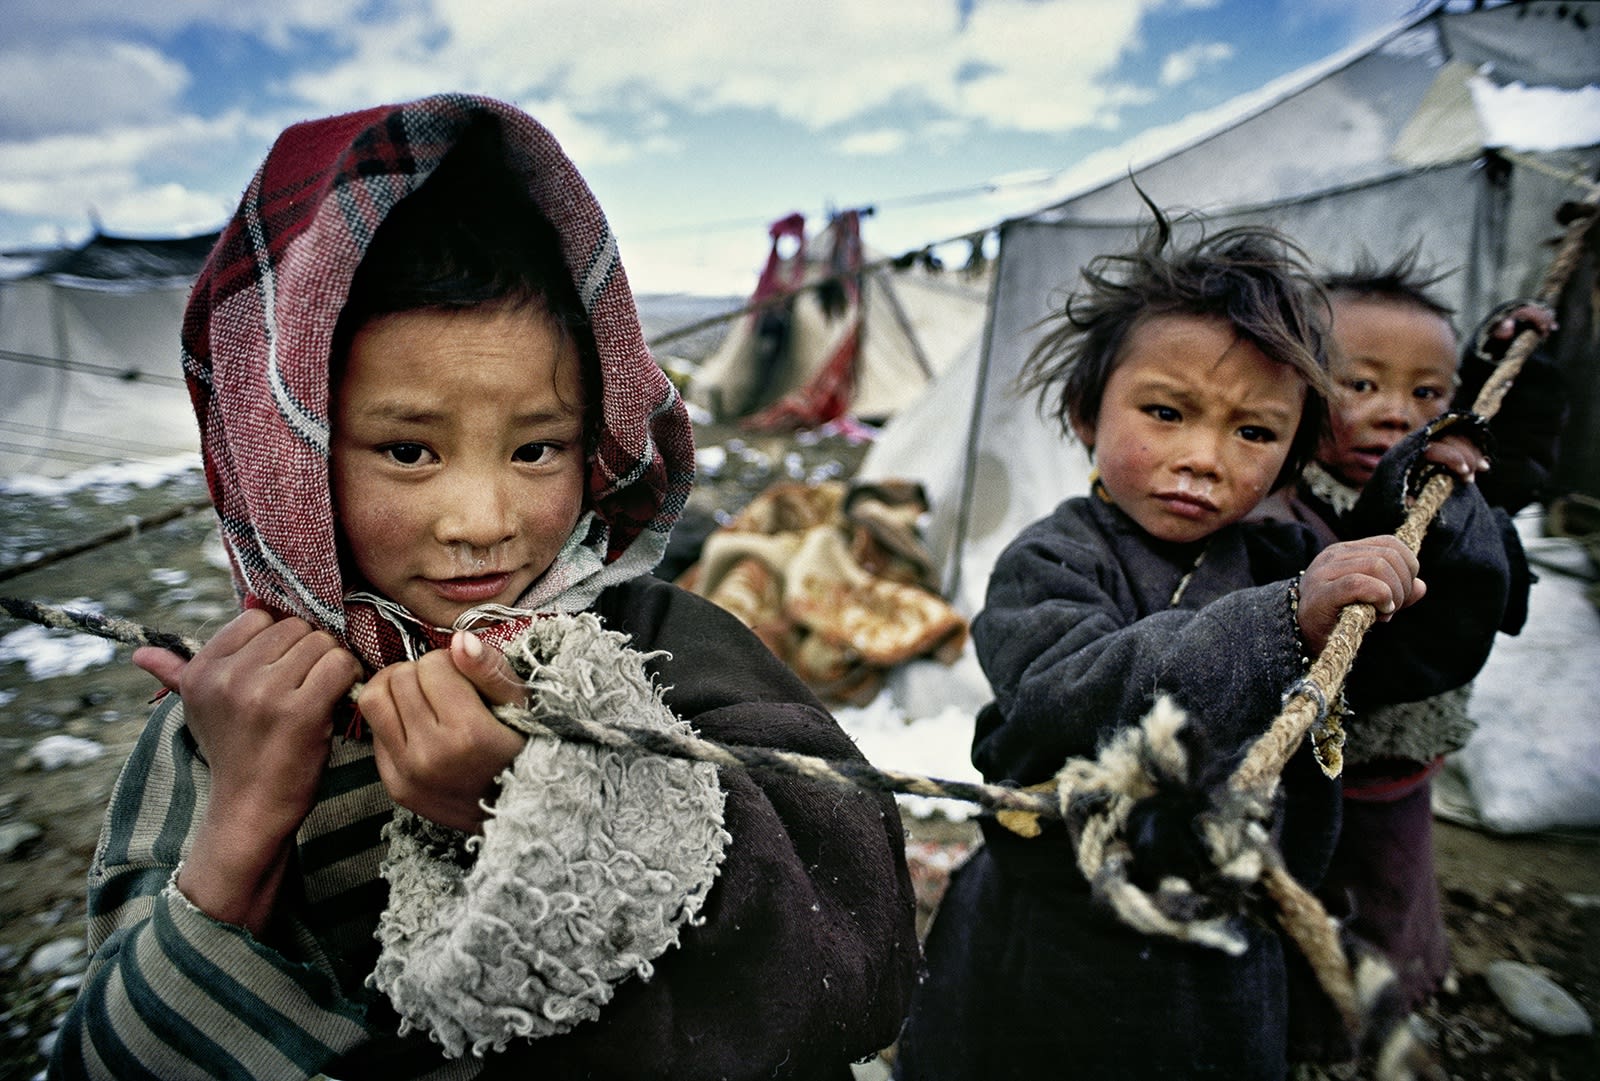 Matjaž Krivic, Darchen, Tibet, 2008 – 2012